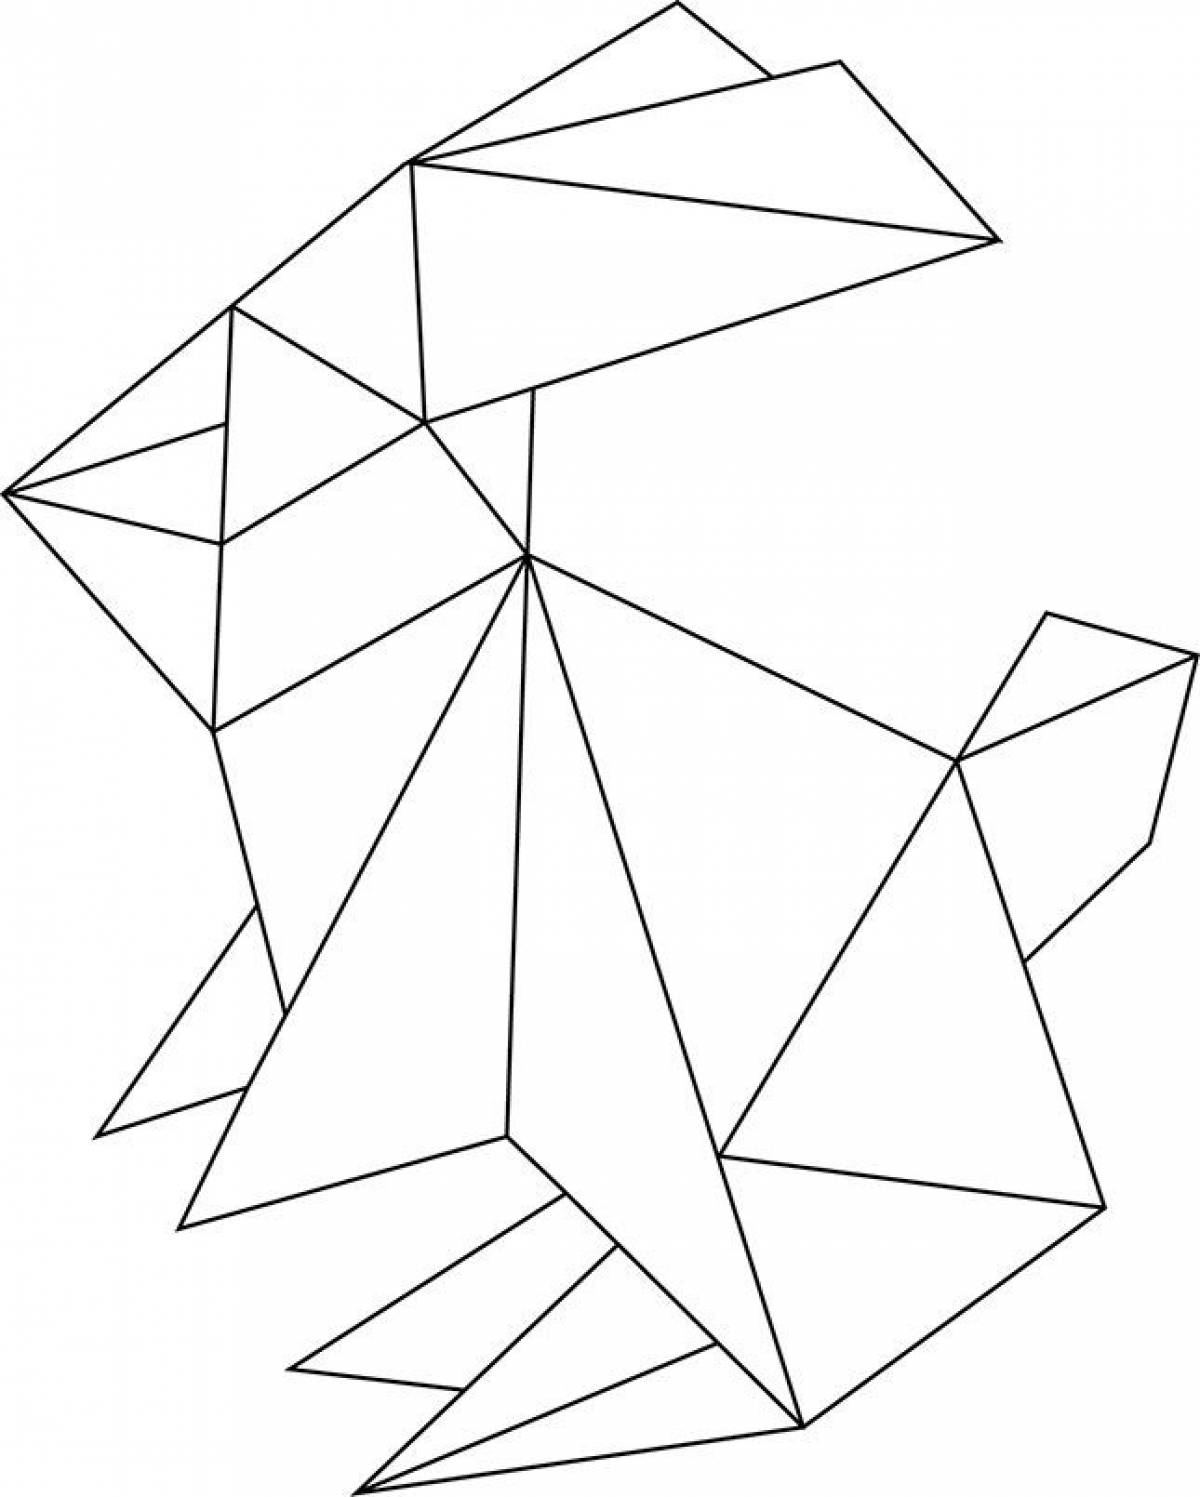 Origami hare